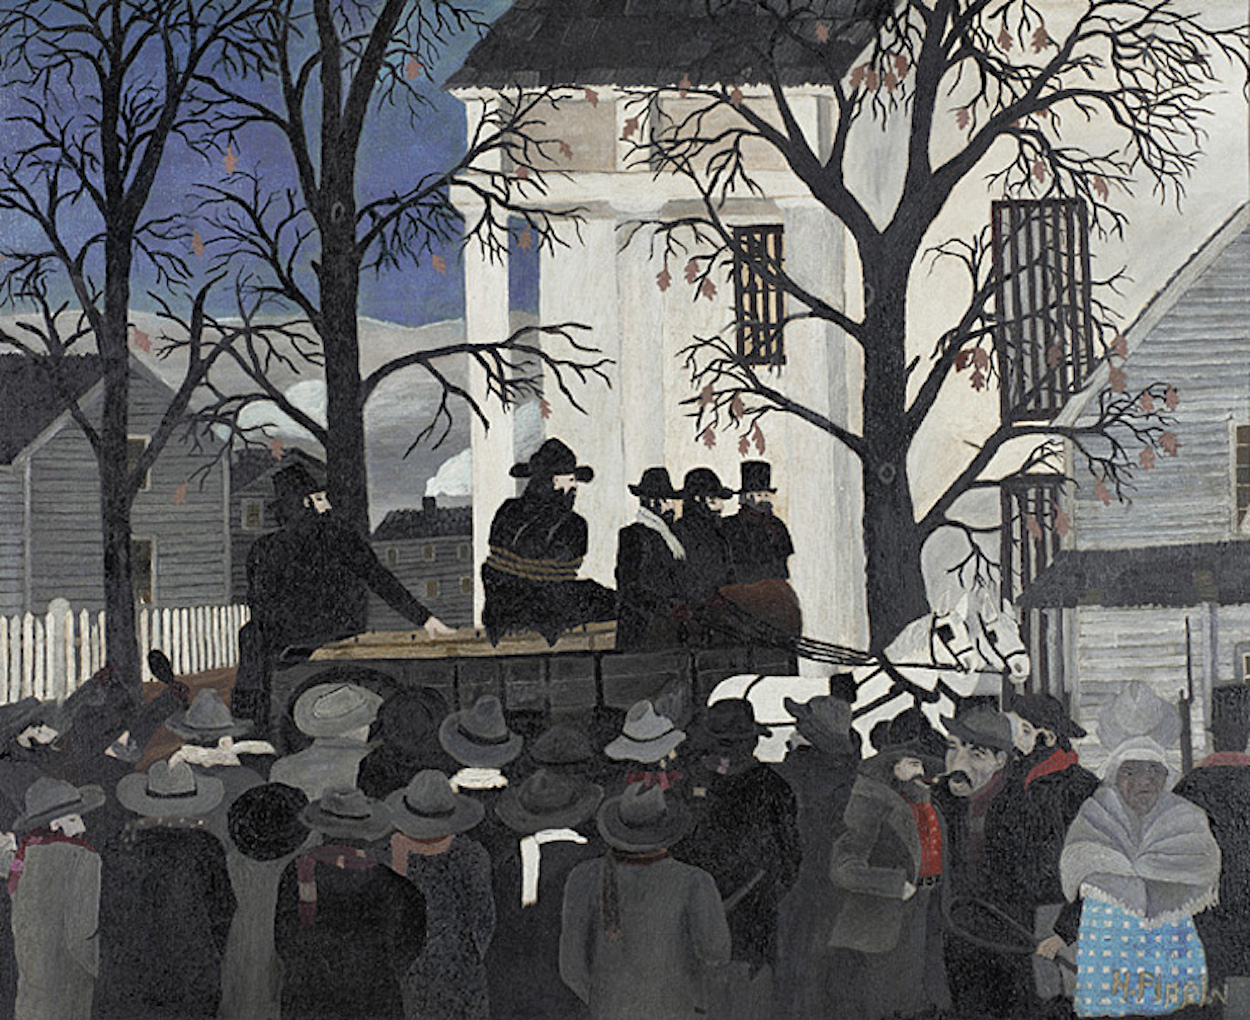 جان براون در حال رفتن به مراسم اعدامش by Horace Pippin - سال 1942 میلادی - 61.3 x 76.8 cm 